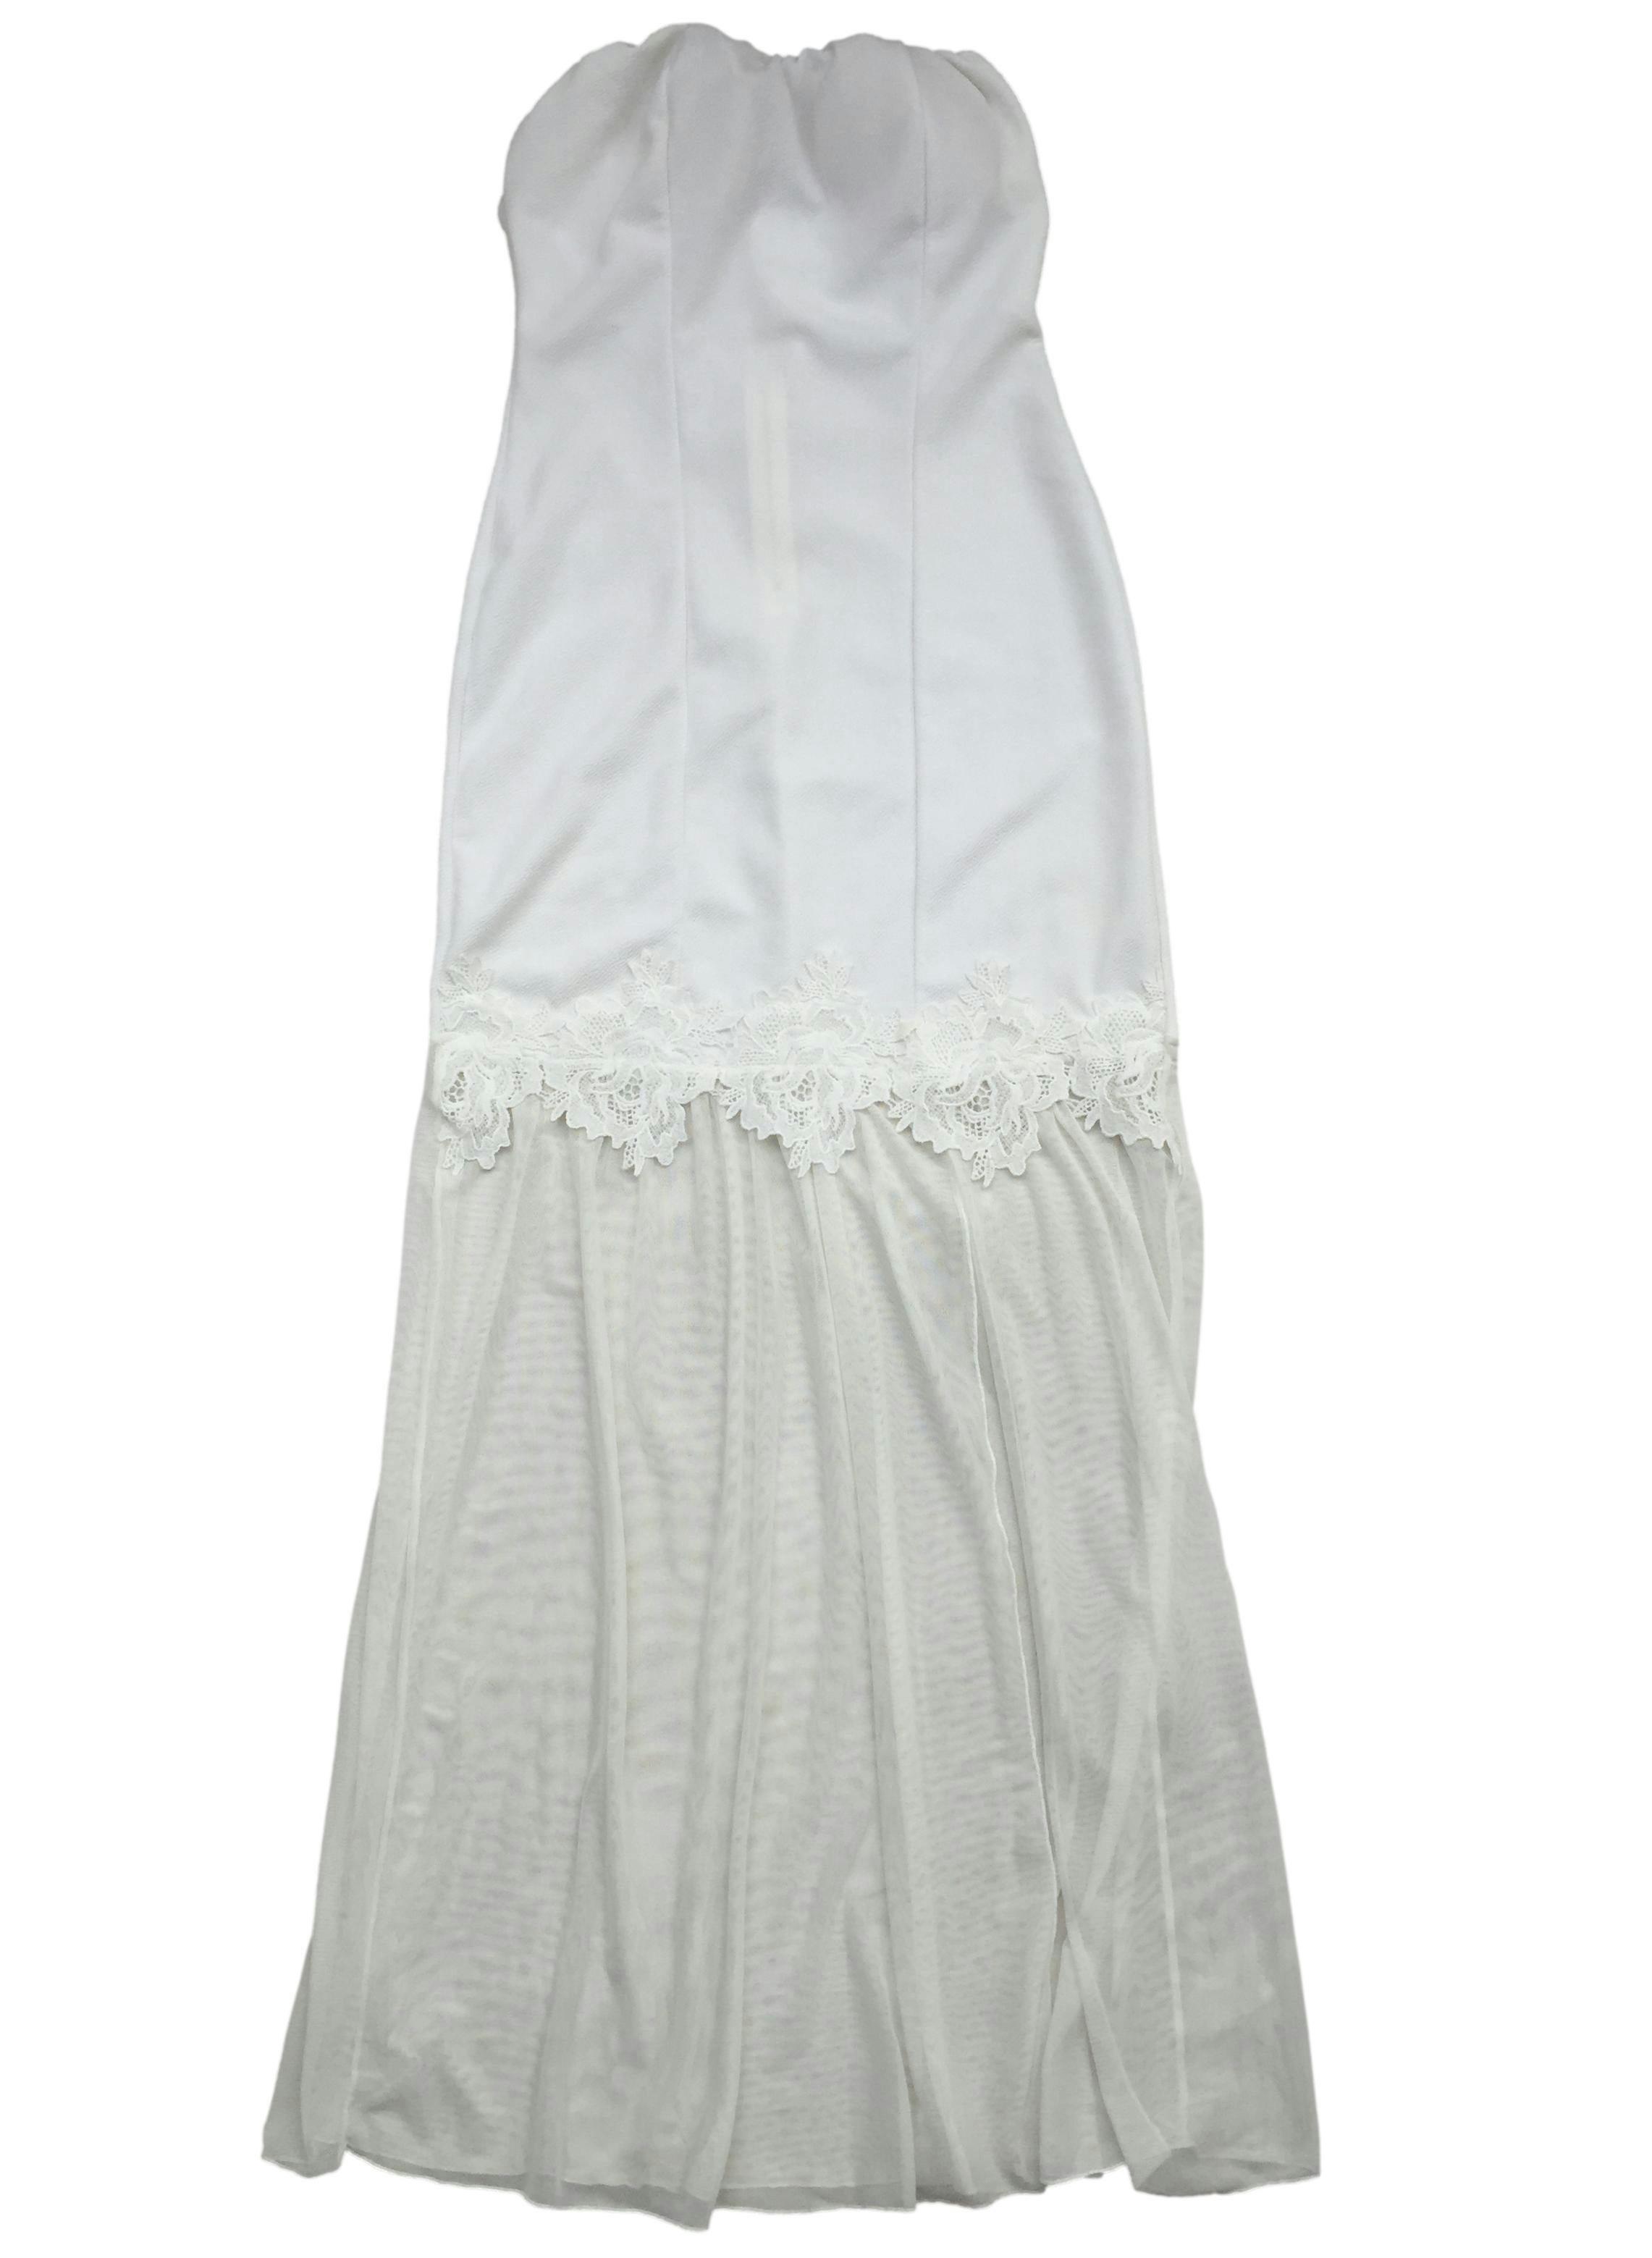 Vestido blanco strapless, cierre posterior con copas, encaje de flores y tul. Busto: 56cm (sin estirar), Largo: 130cm